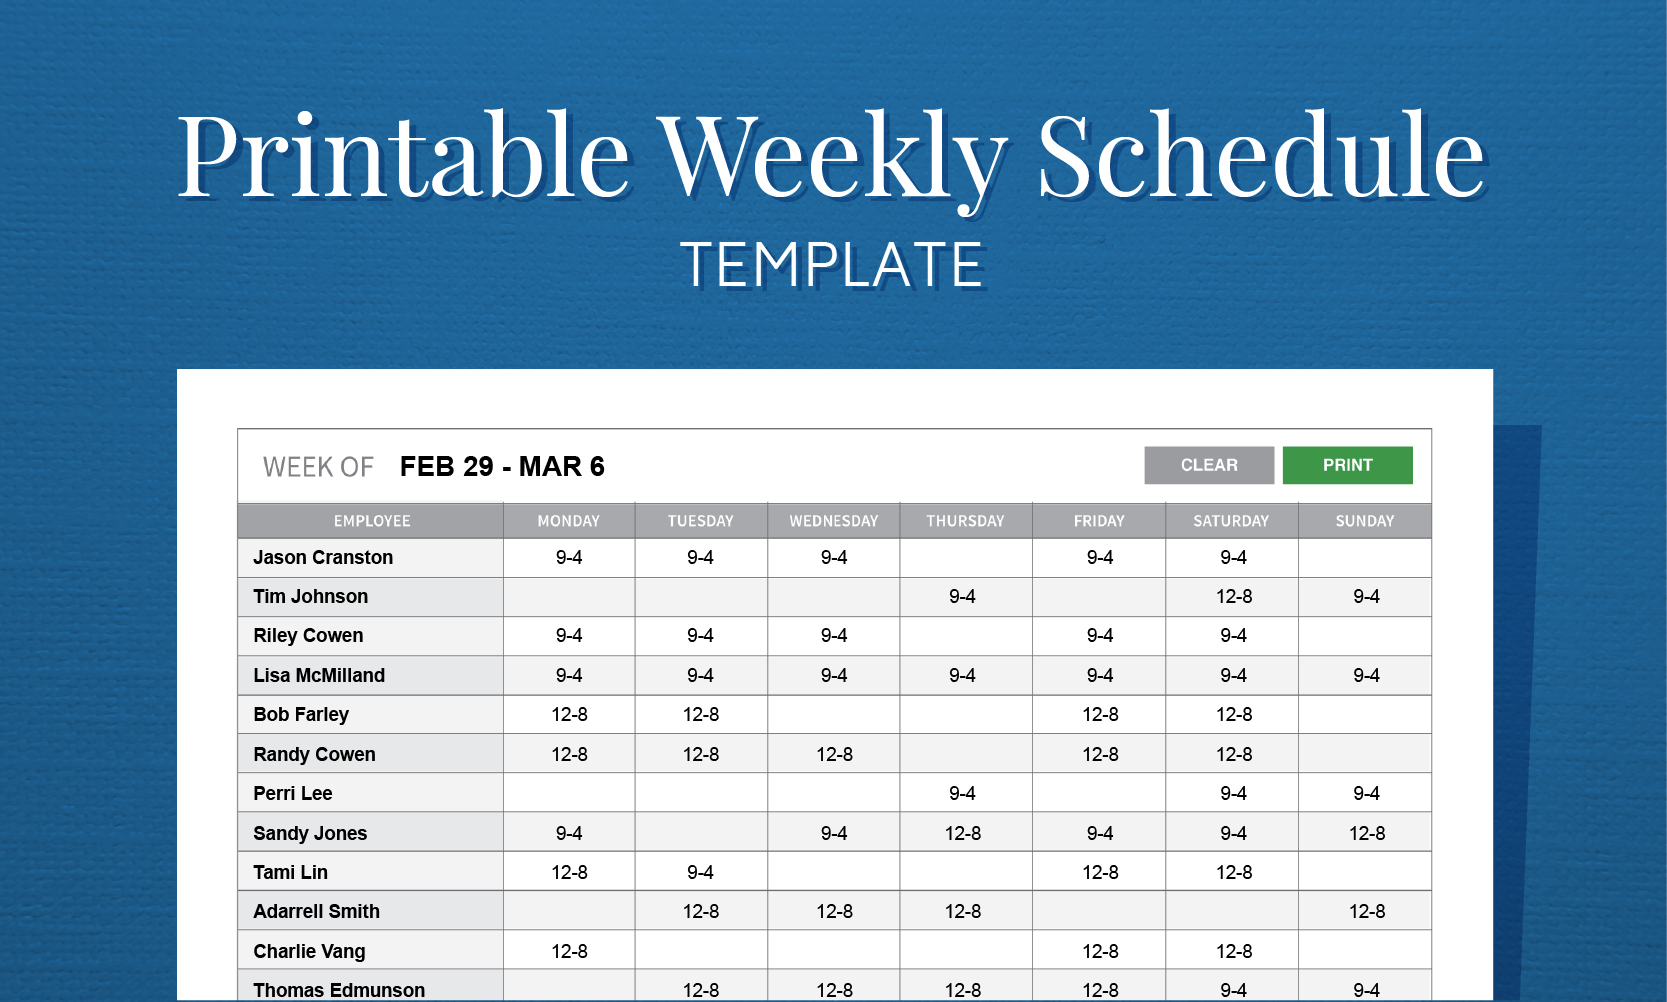 Free Printable Weekly Work Schedule Template For Employee Scheduling - Free Printable Blank Work Schedules